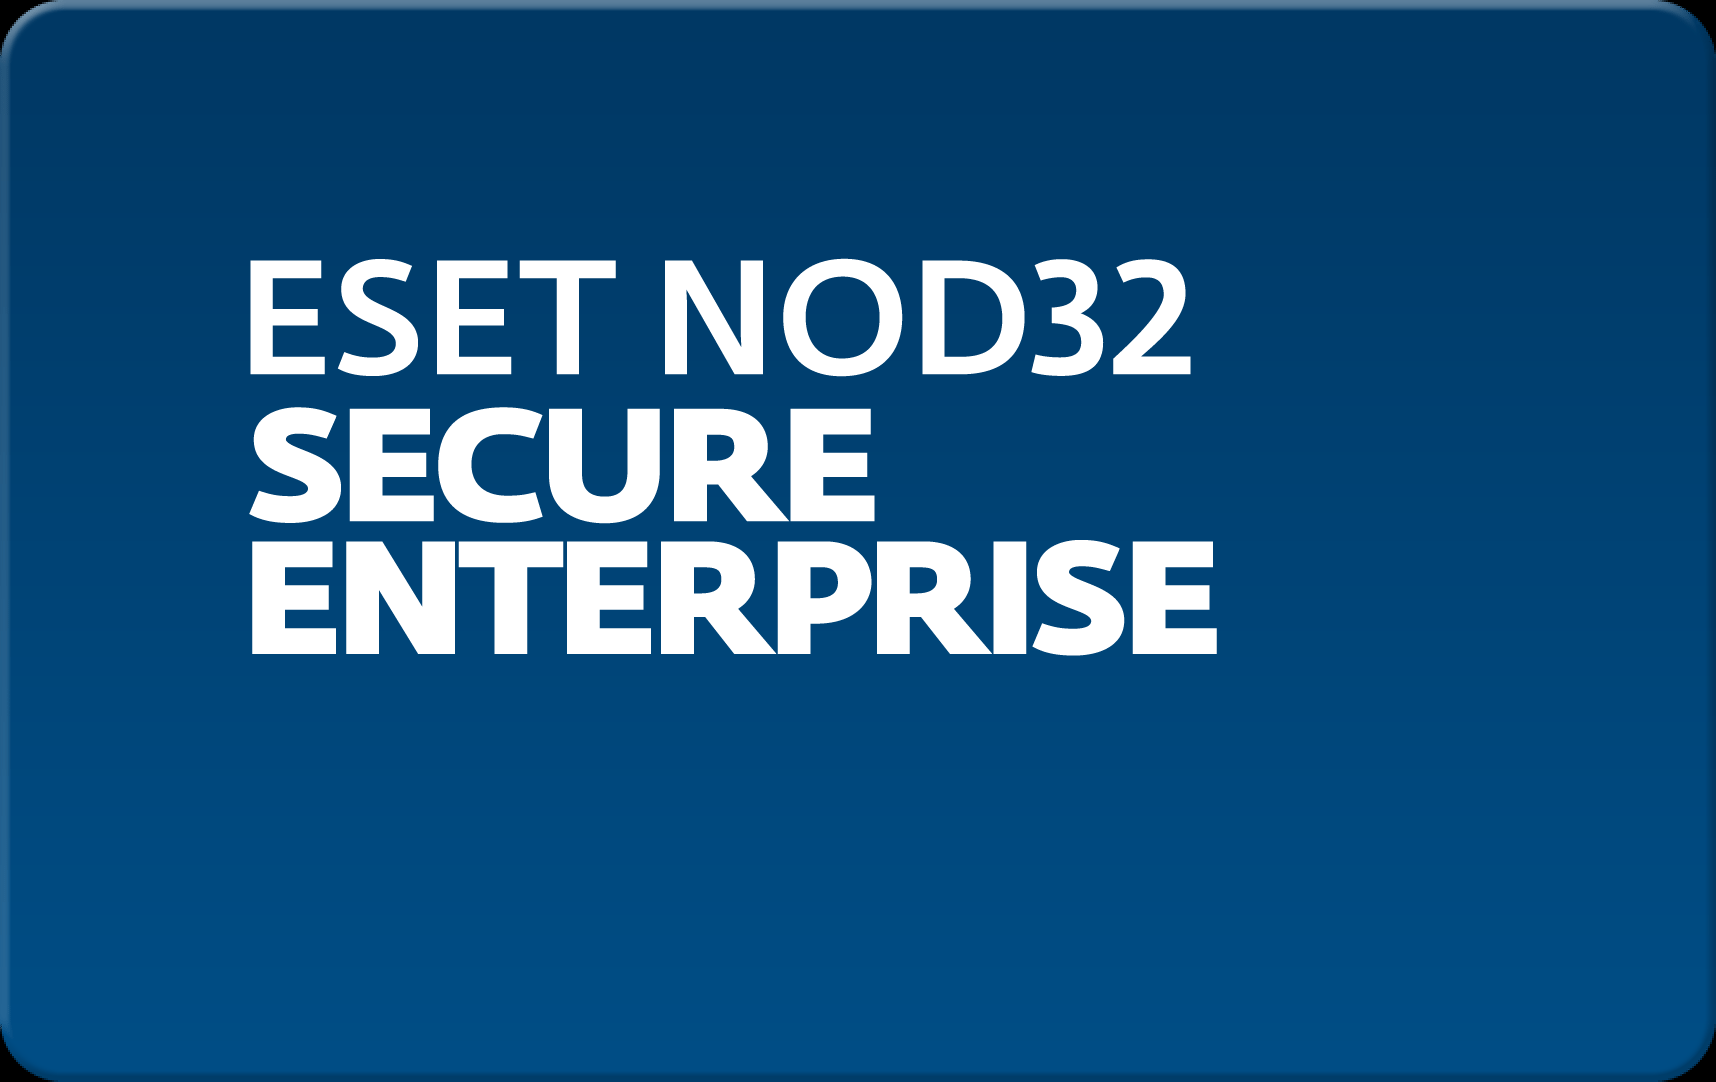        Eset NOD32 Secure Enterprise  163  NOD32-ESE-NS-1-163  #1